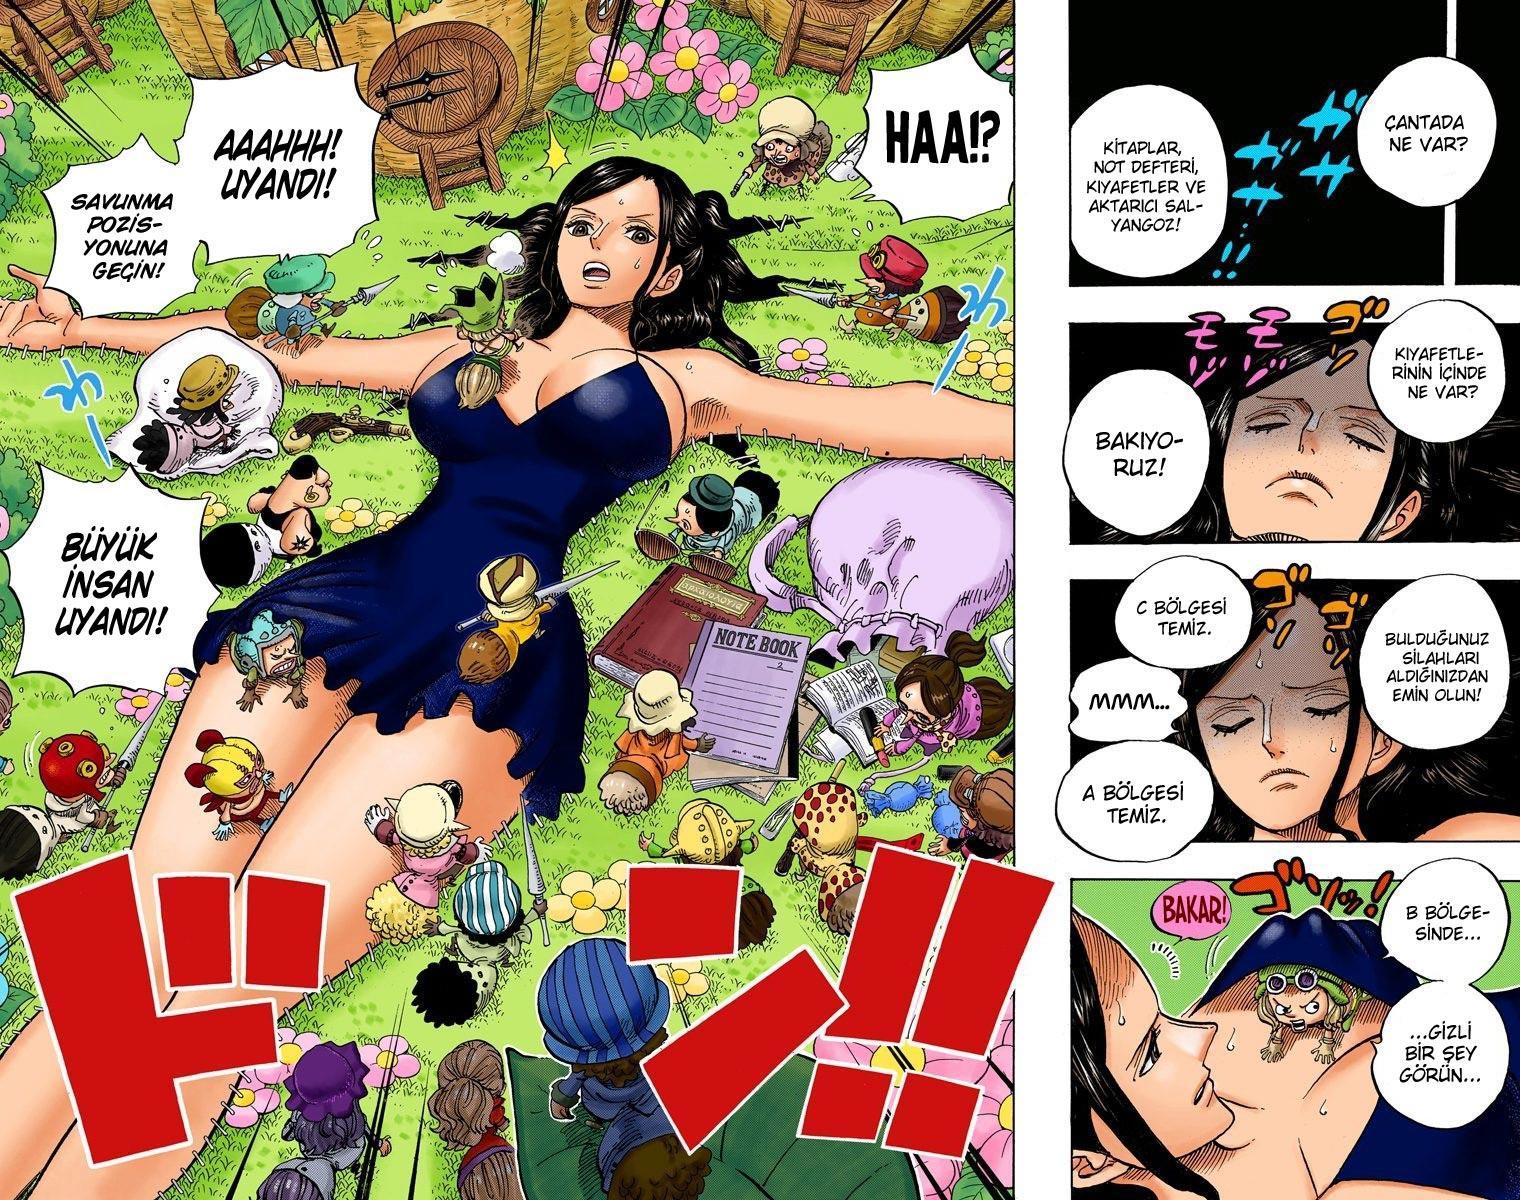 One Piece [Renkli] mangasının 711 bölümünün 3. sayfasını okuyorsunuz.